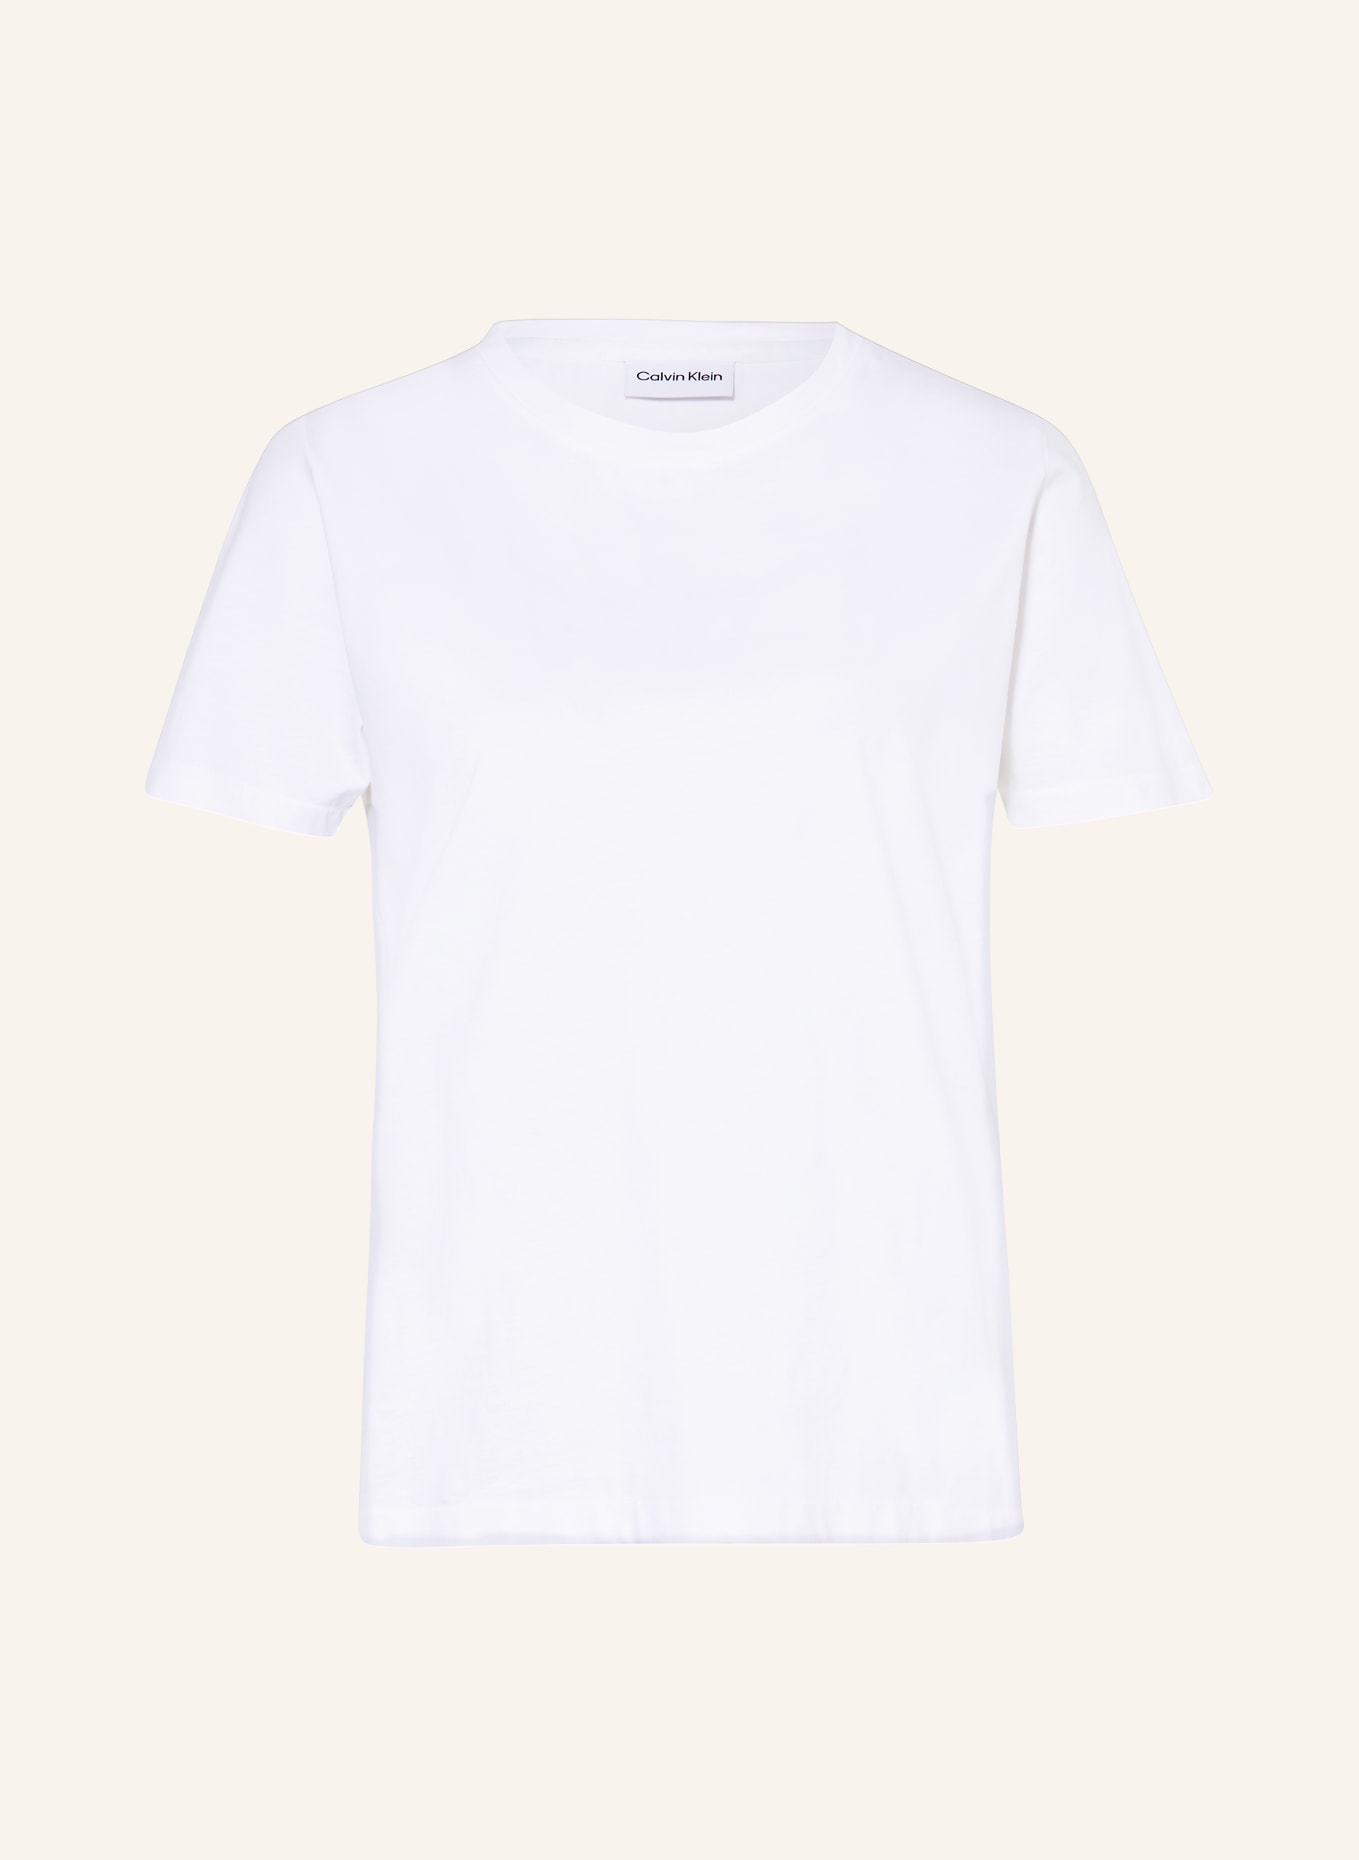 Calvin Klein T-shirt, Color: CREAM (Image 1)